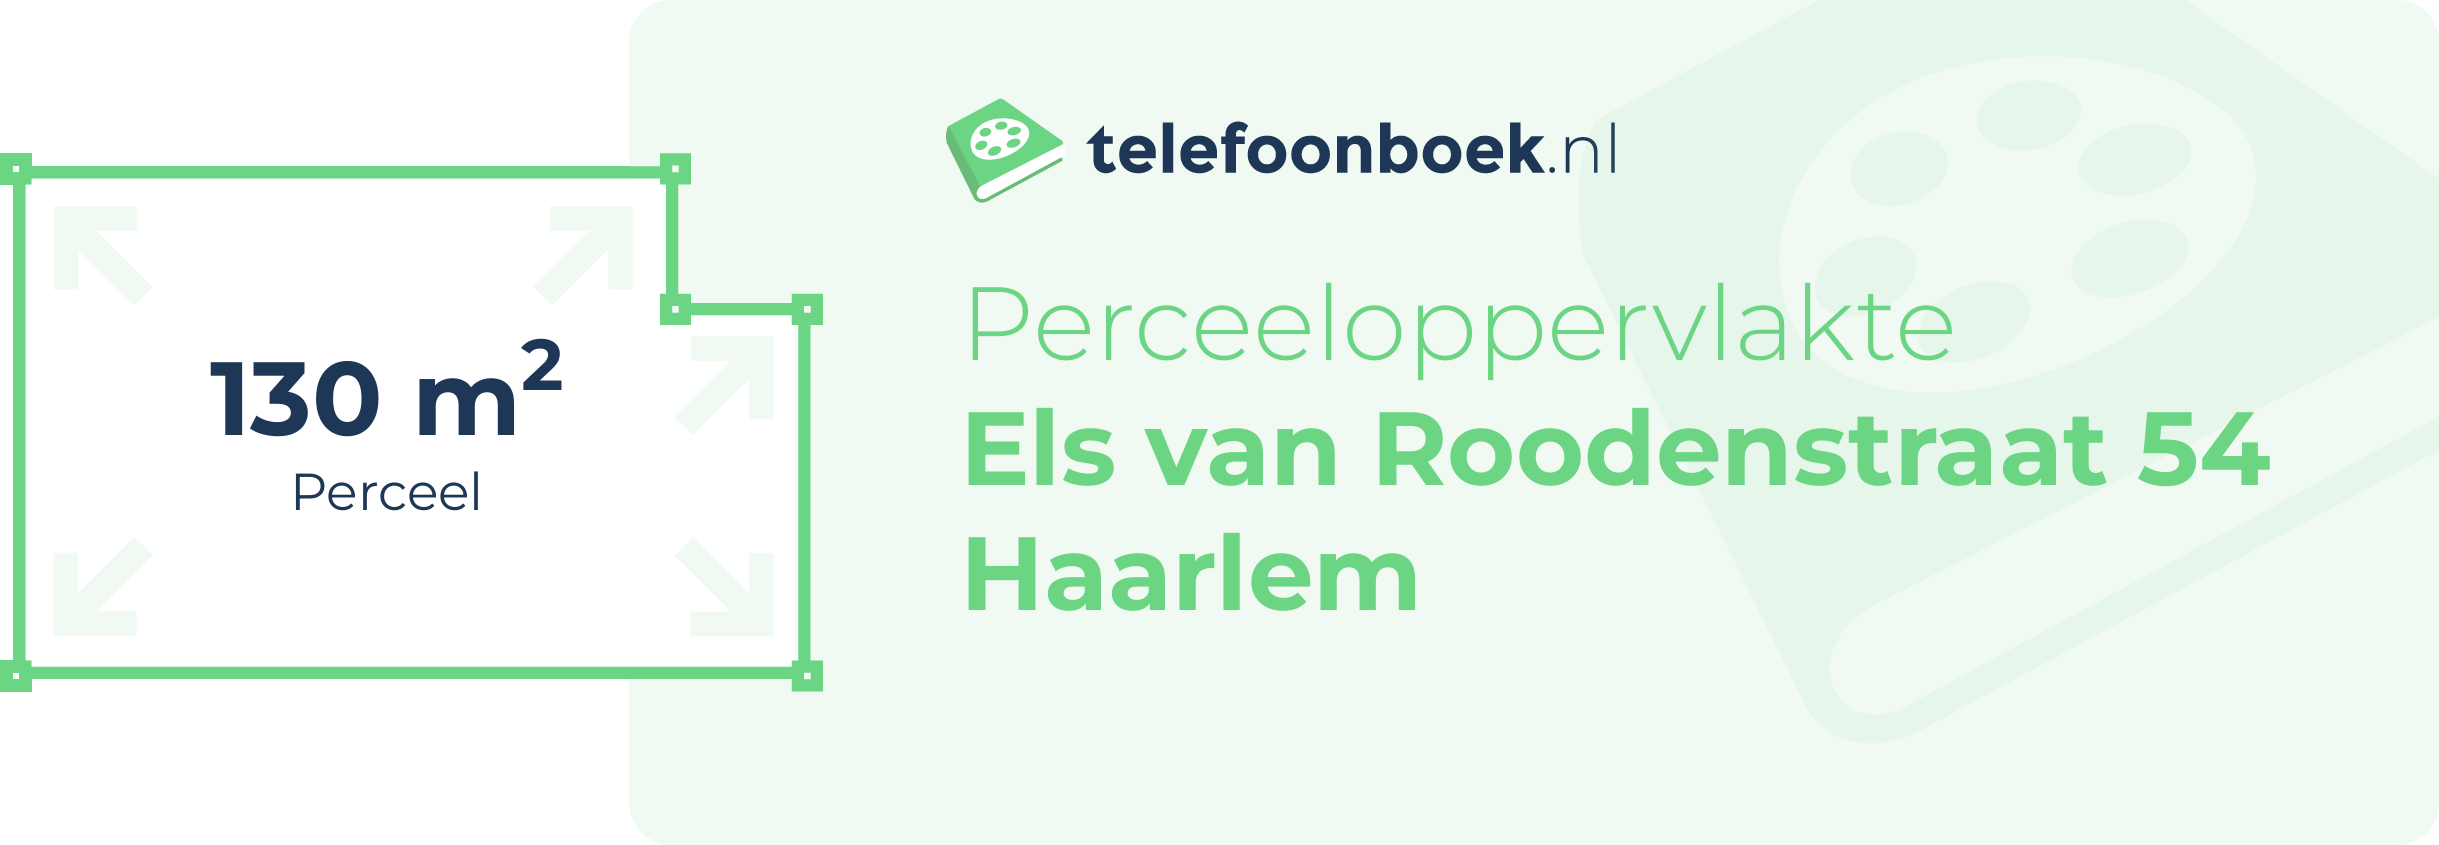 Perceeloppervlakte Els Van Roodenstraat 54 Haarlem